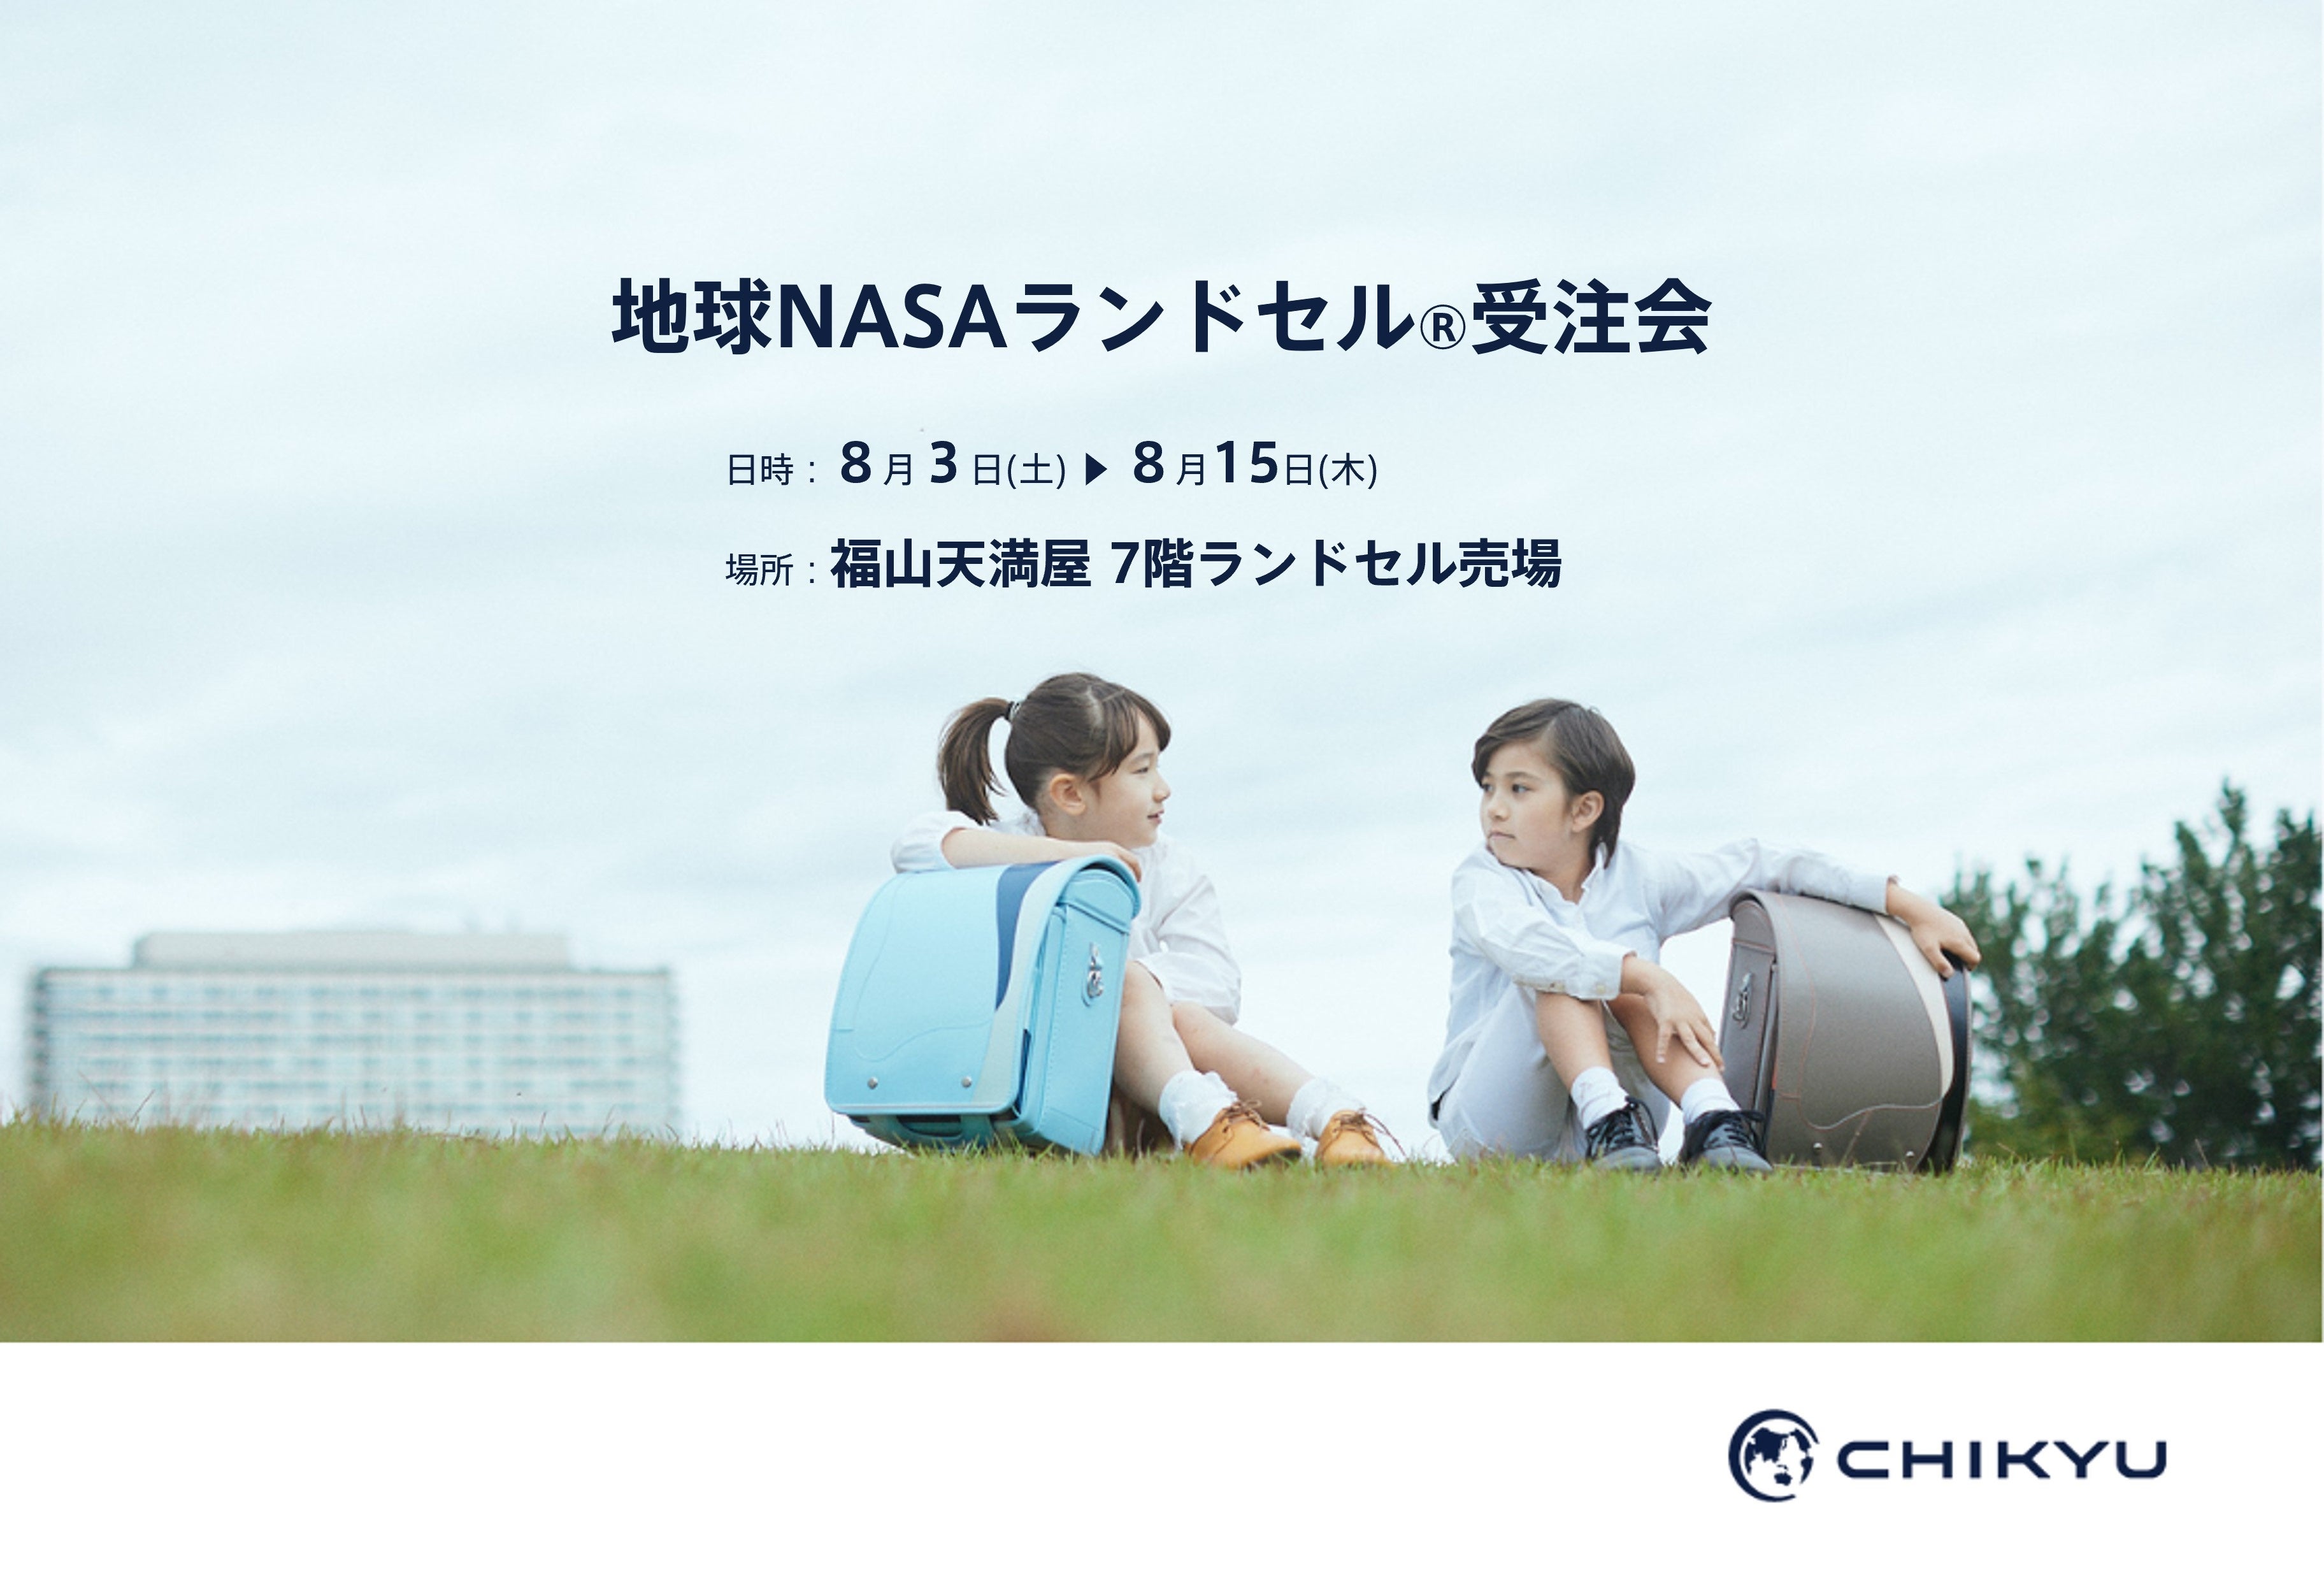 【広島】福山天満屋にて「地球NASAランドセル® 受注会」を開催いたします。